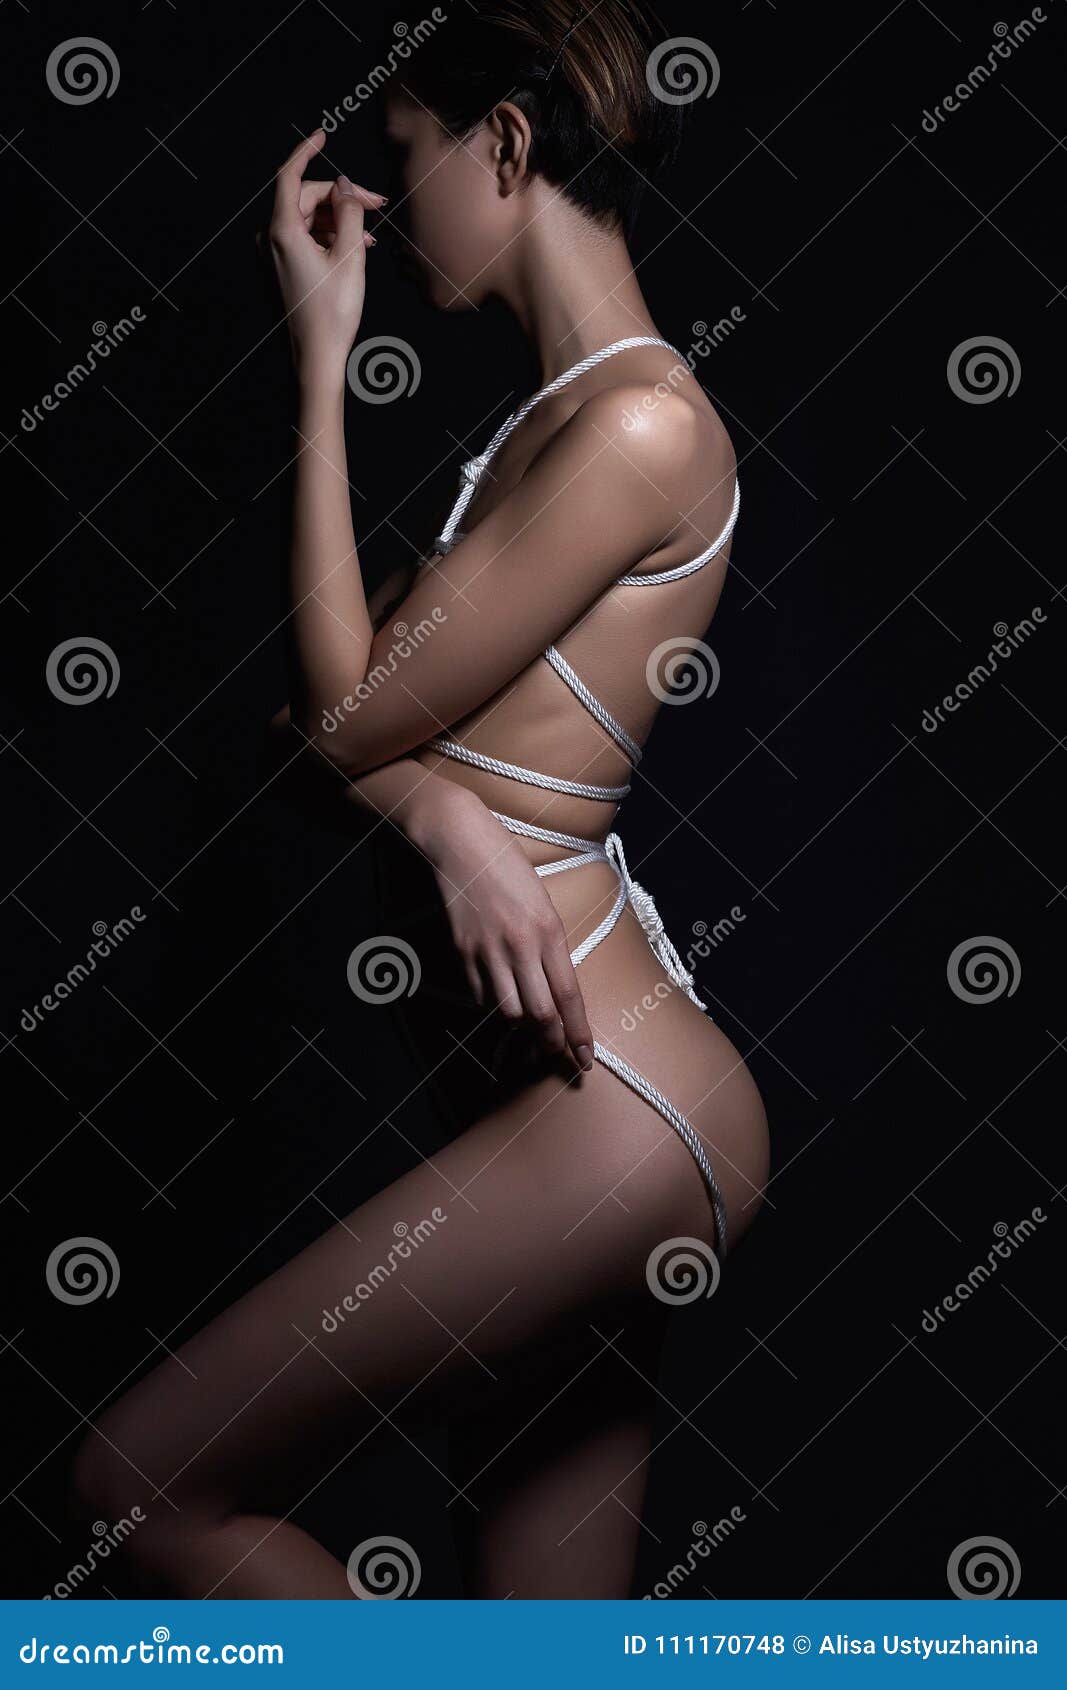 Alex Yoong Desnudo Bound Erotic Naked